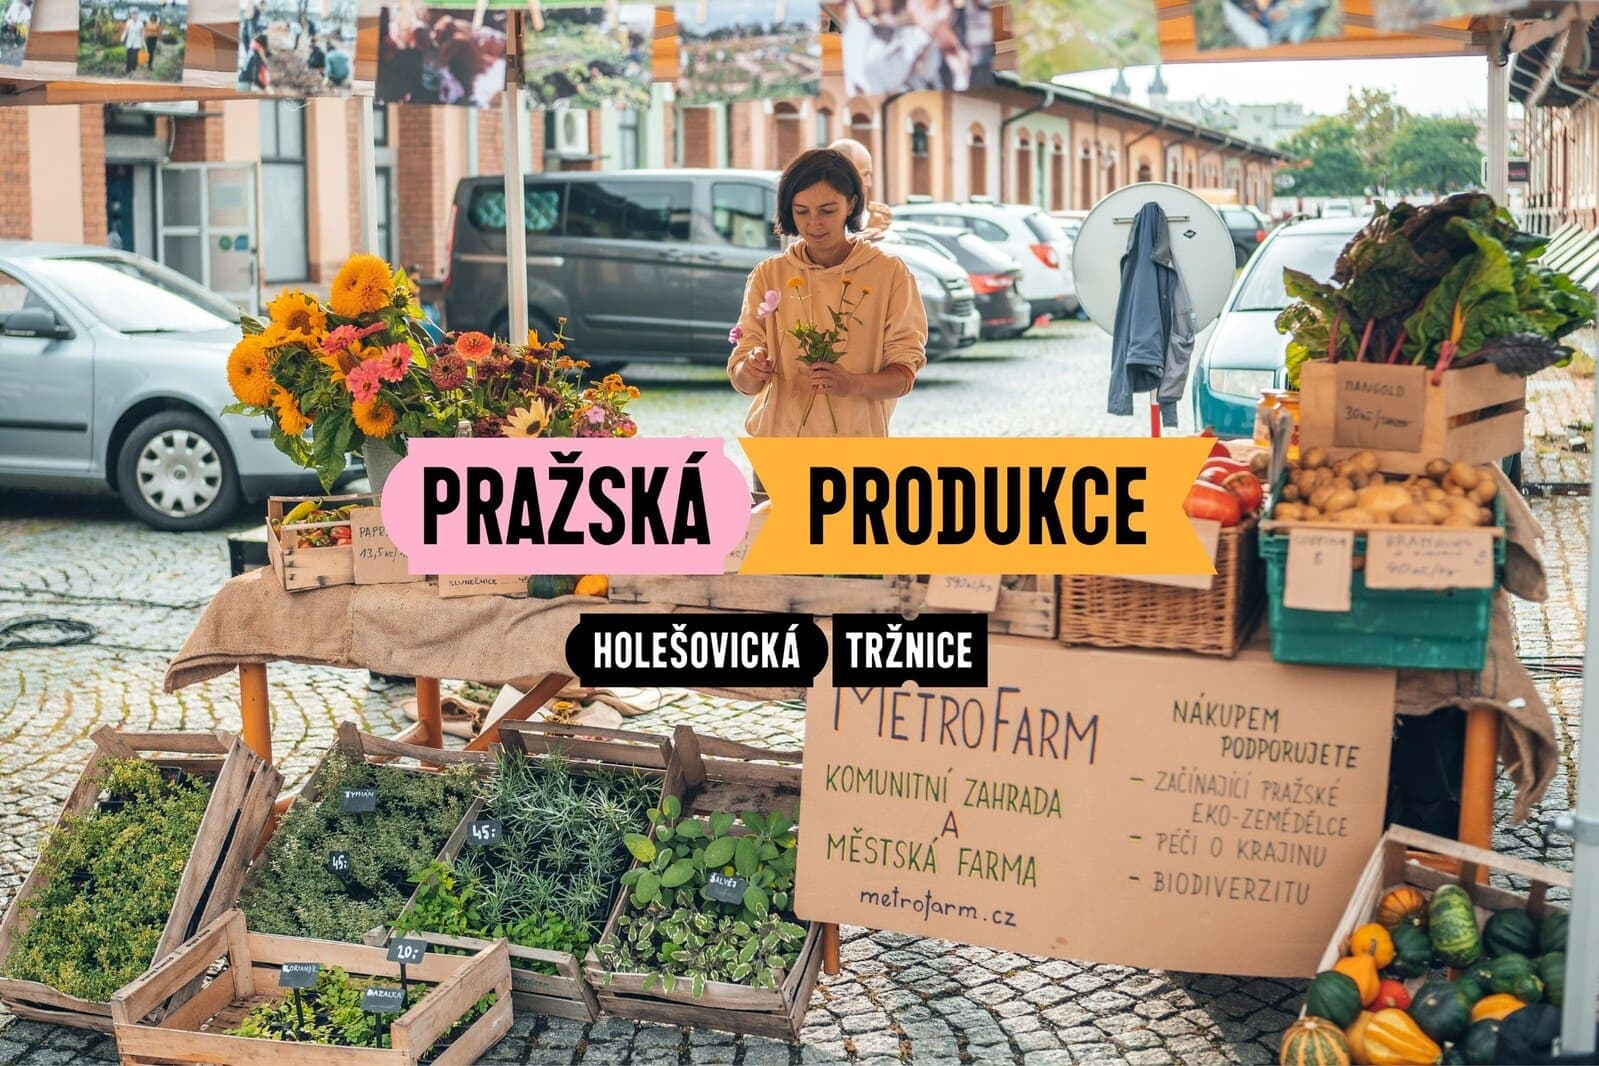 17 июня будет организован рынок пражских продуктов Pražská produkce